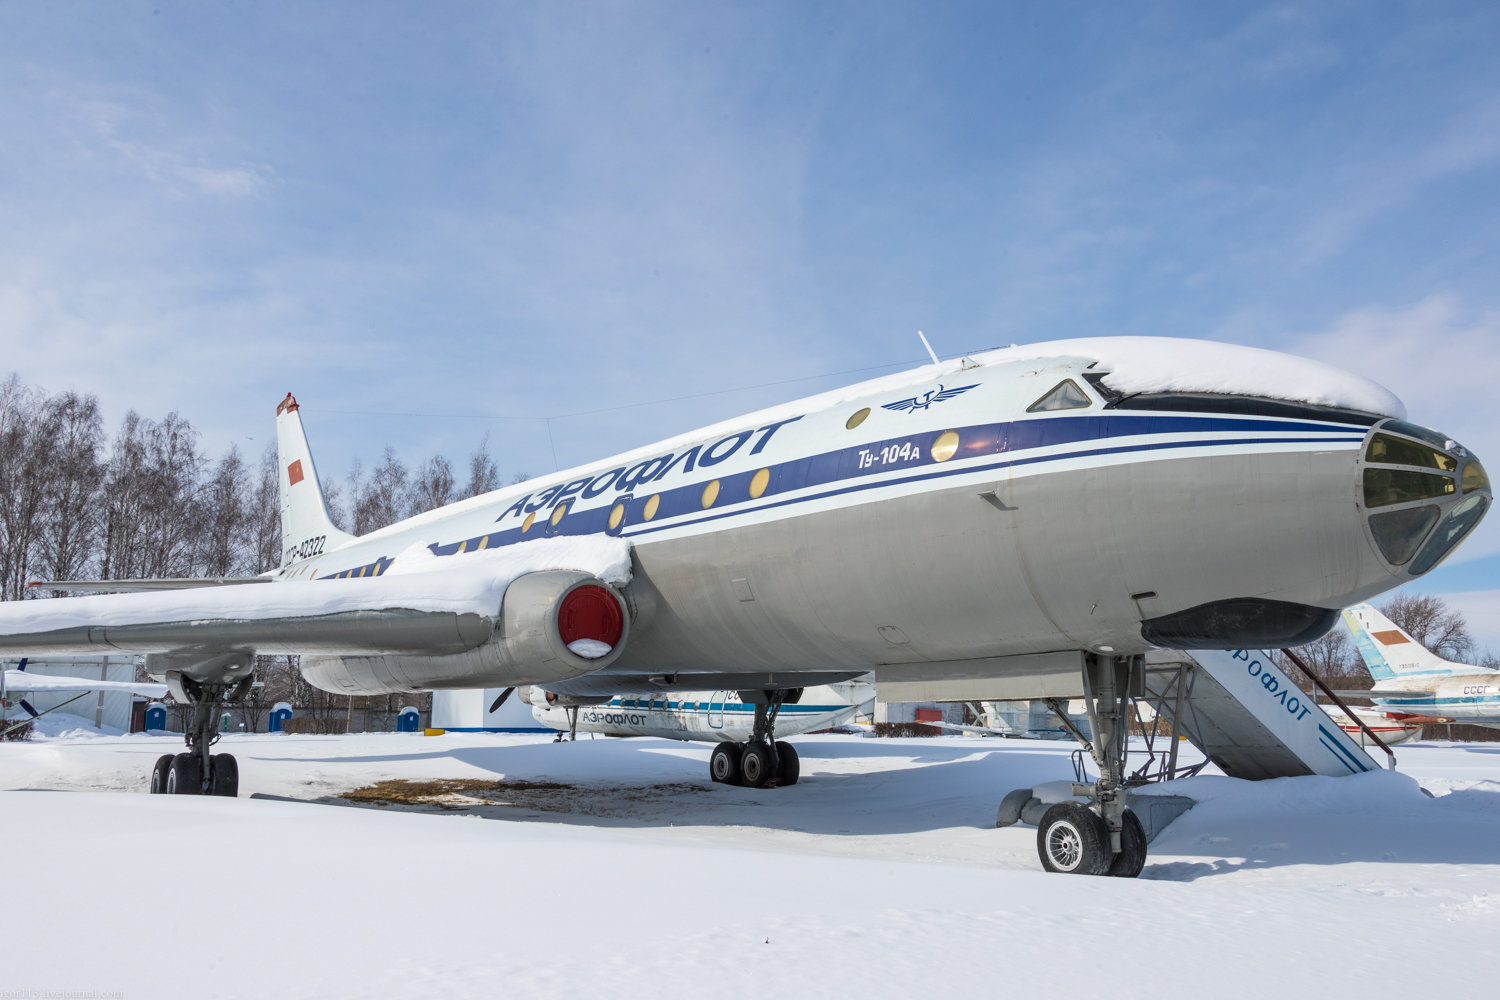 Первый реактивный пассажирский самолет. Ту-104 пассажирский самолёт. Ту-104 двухдвигательный реактивный. Первый реактивный пассажирский самолет ту-104. Гражданский реактивный самолёт ту 104.